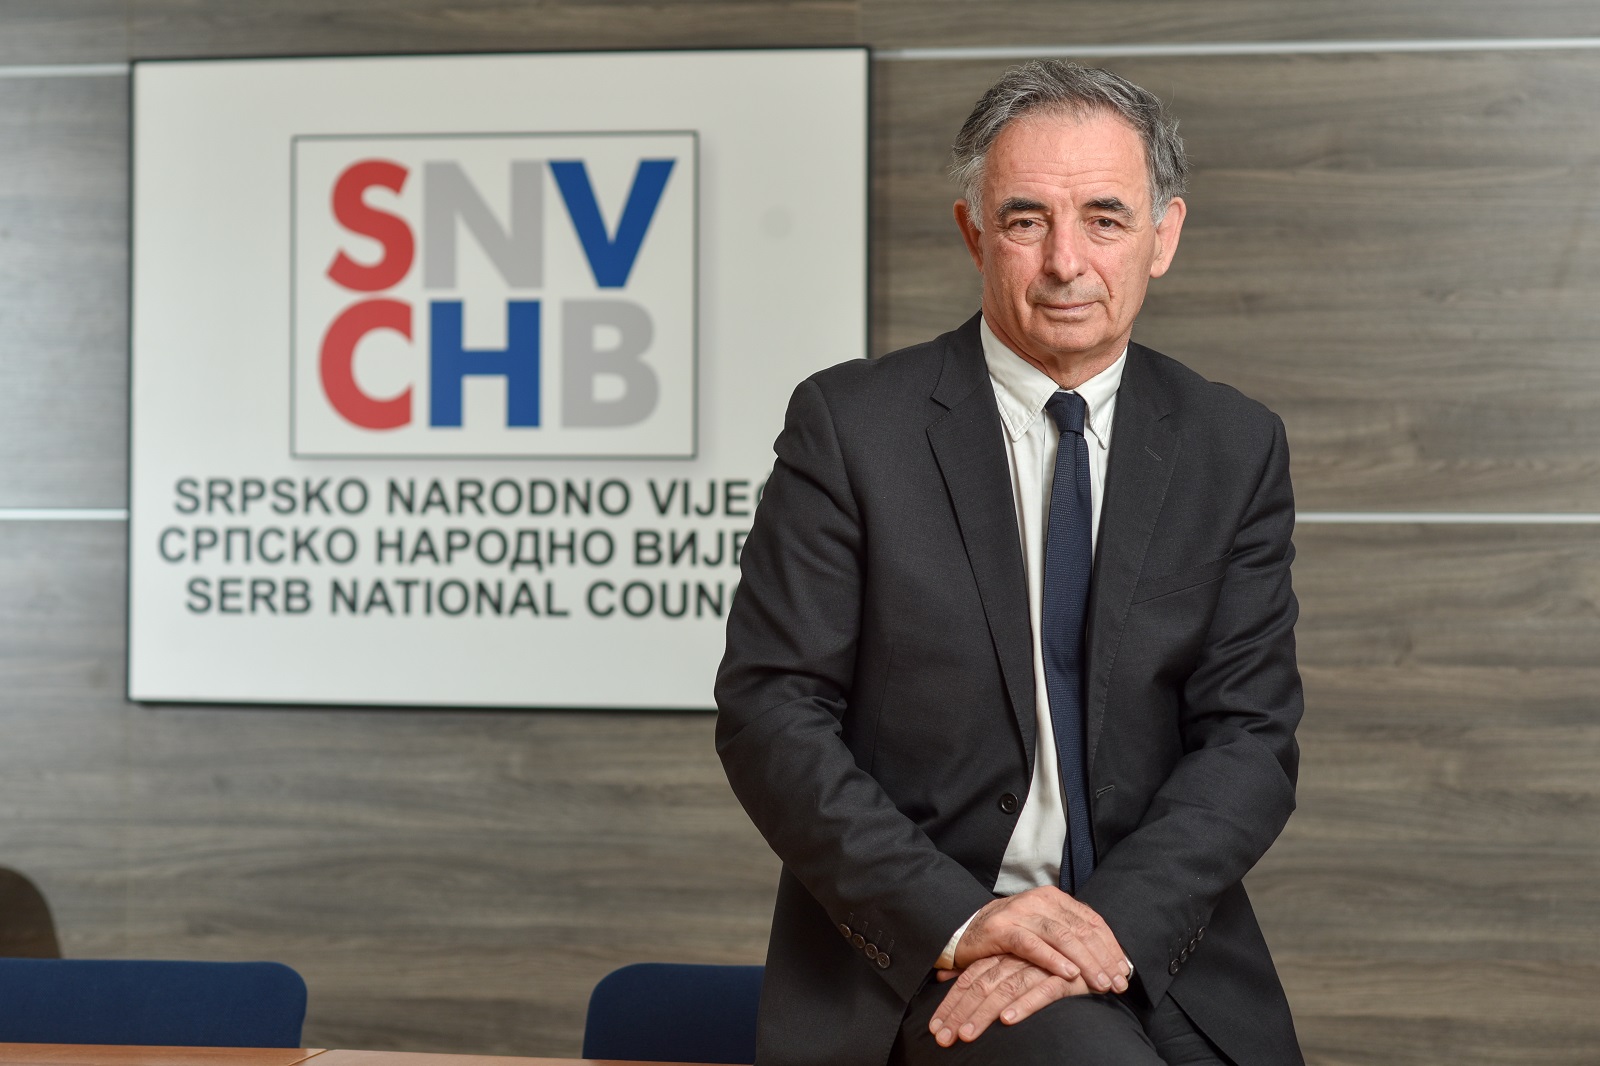 22.04.2022., Zagreb - Milorad Pupovac, predsjednik Srpskog narodnog vijeca. 

Photo Sasa ZinajaNFoto